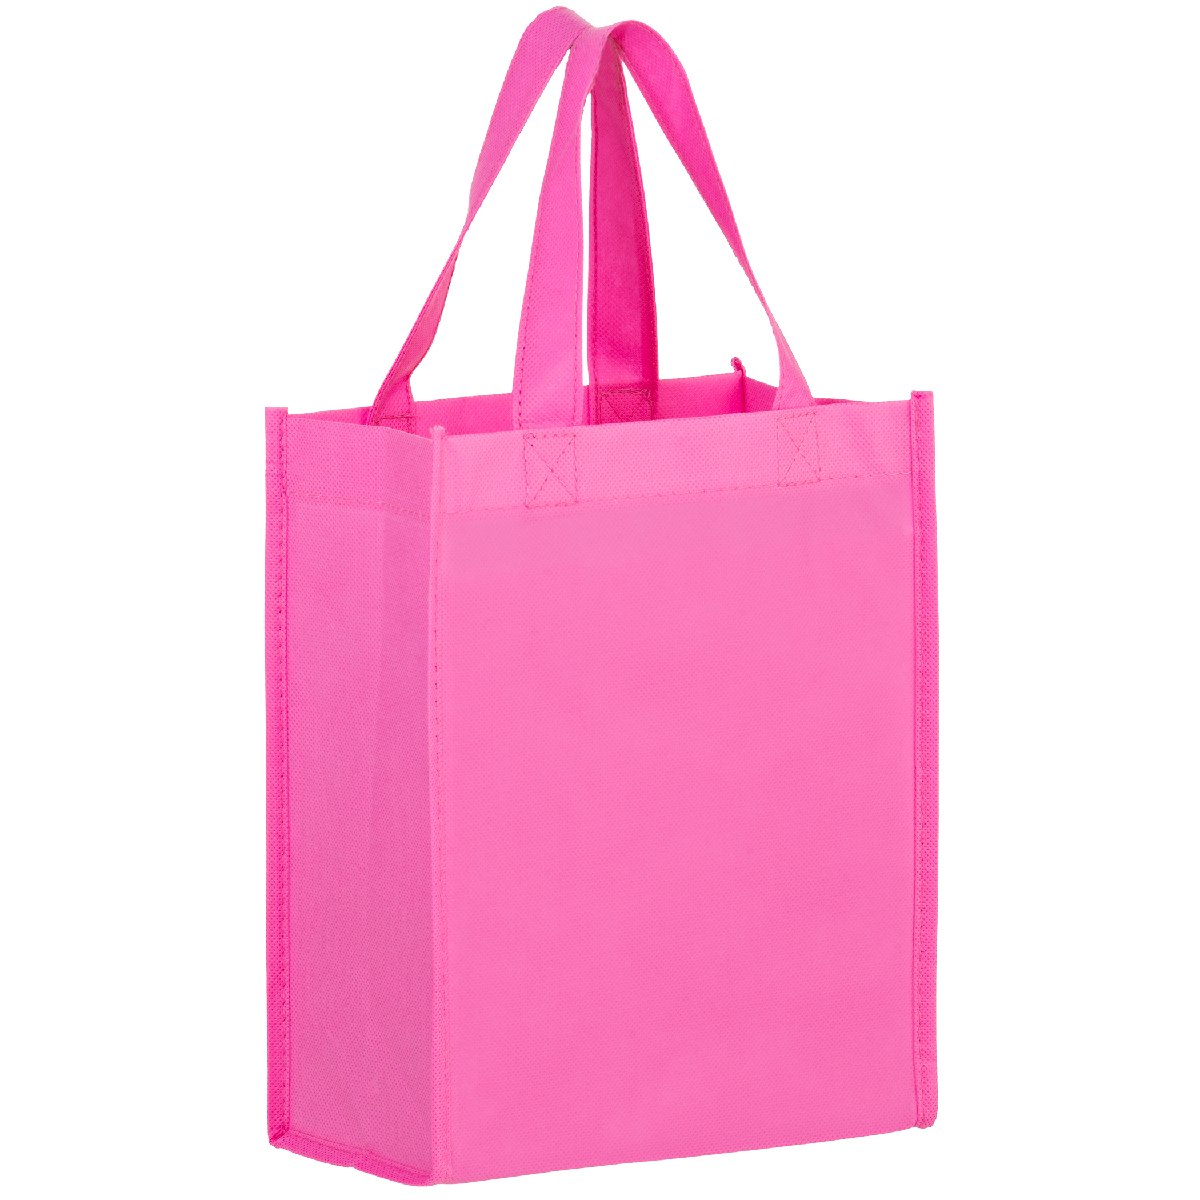 Bright Pink Recession Non-Woven Tote Bag 